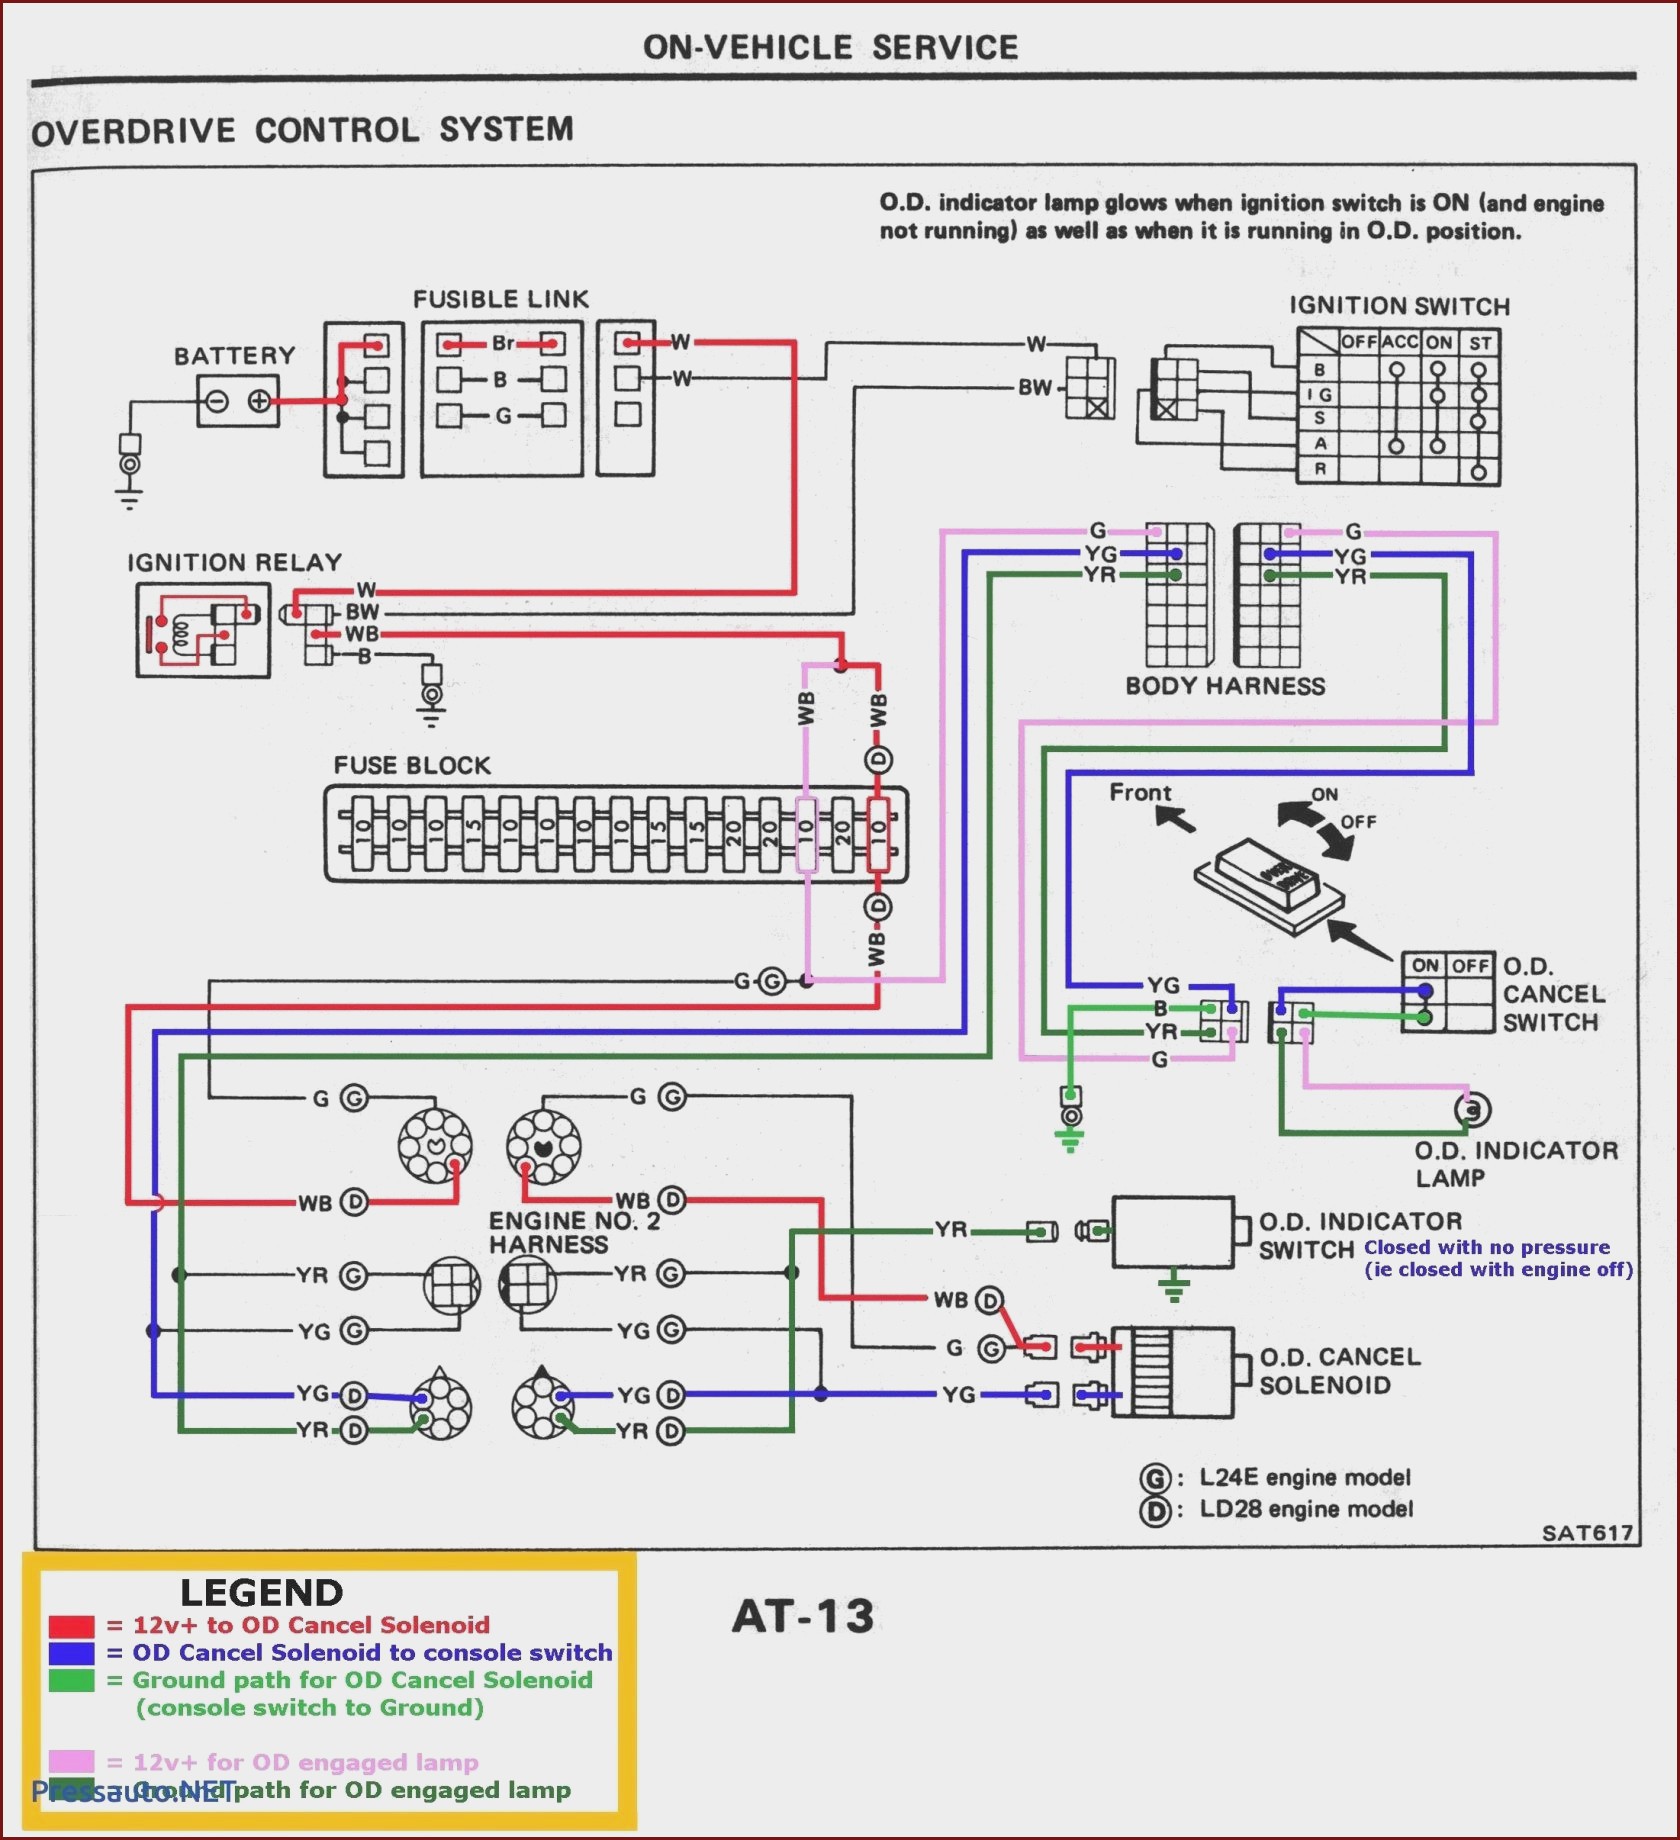 Car Components Diagram Bmw X5 Radio Wiring Premium Wiring Diagram Design Of Car Components Diagram